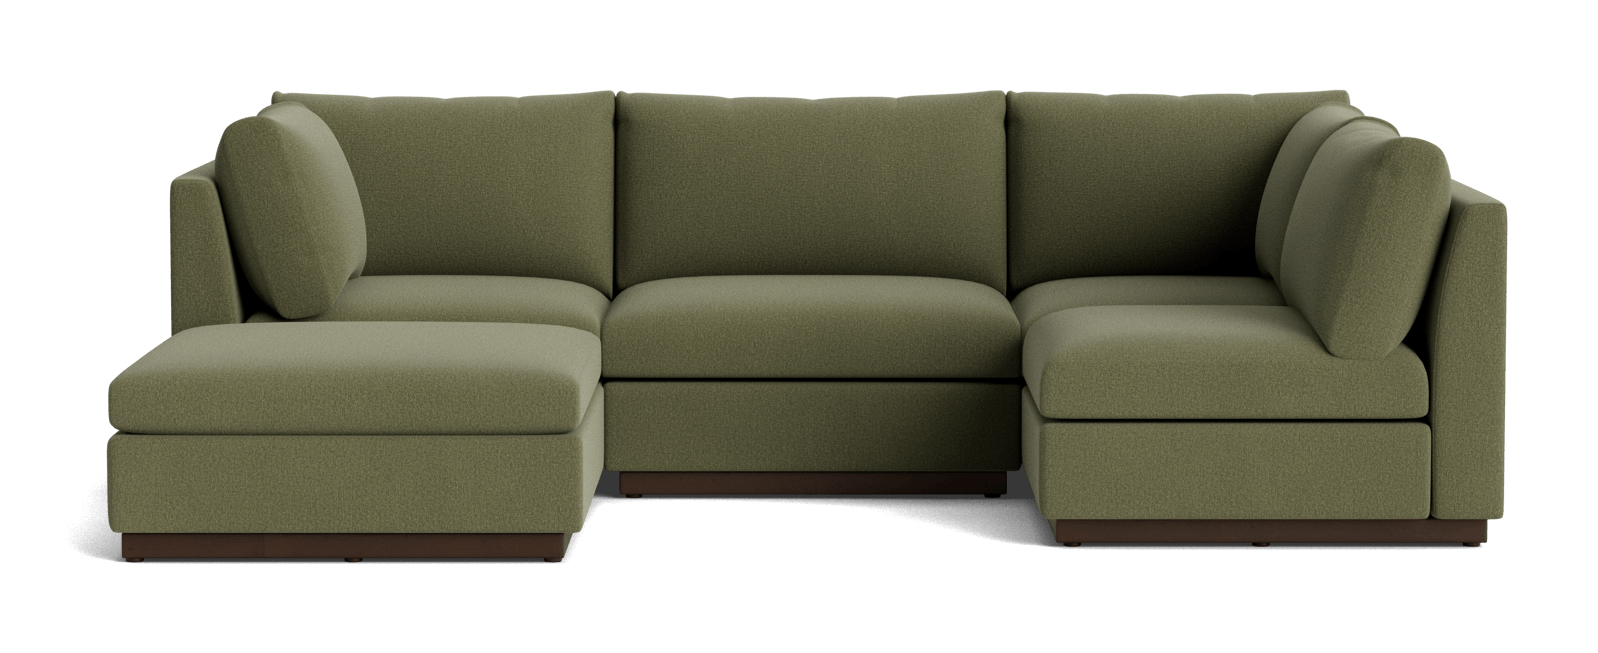 holt armless sofa sectional %285 piece%29 faithful olive